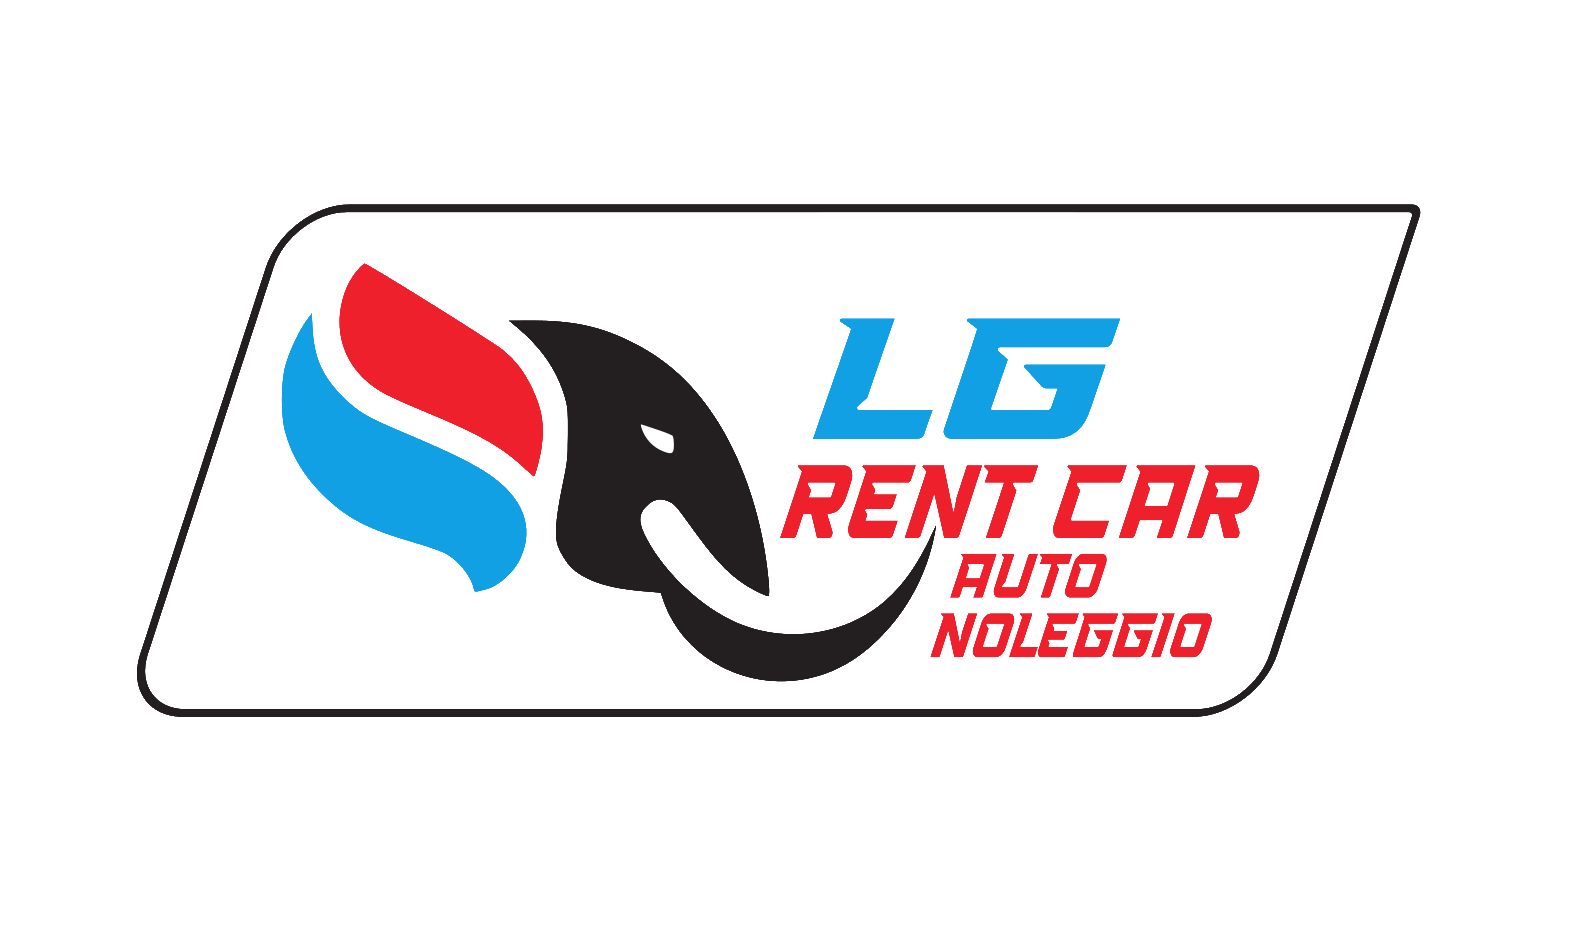 LG Autonoleggio - Noleggio Auto - Moto - Furgoni Sabbioneta - Mantova - Parma